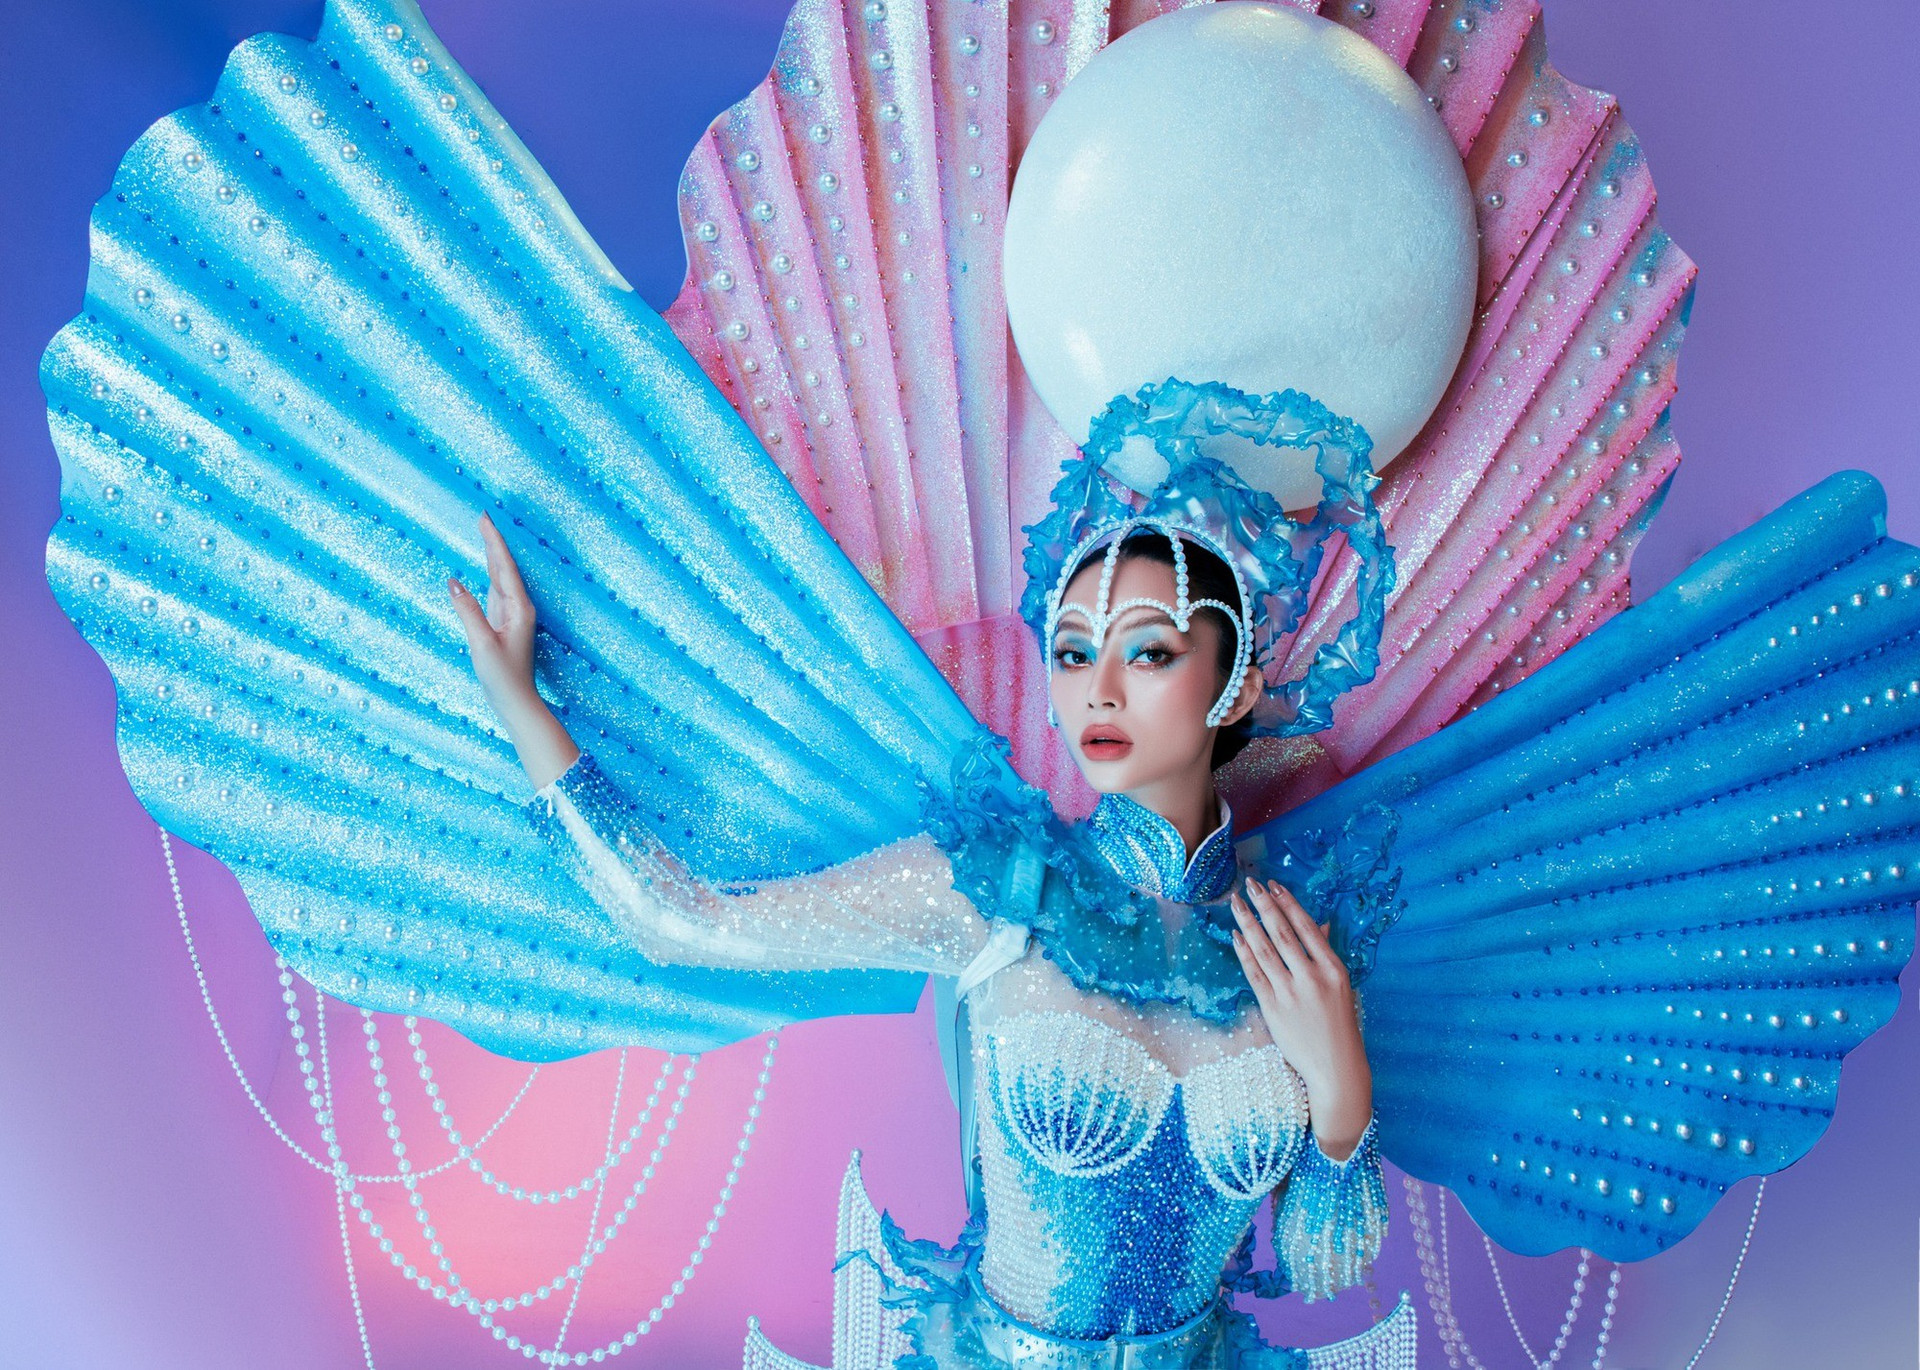 Lâm Thu Hồng hóa nàng tiên của biển trong trang phục dân tộc mang tới The Miss Globe 2022 - Ảnh 5.